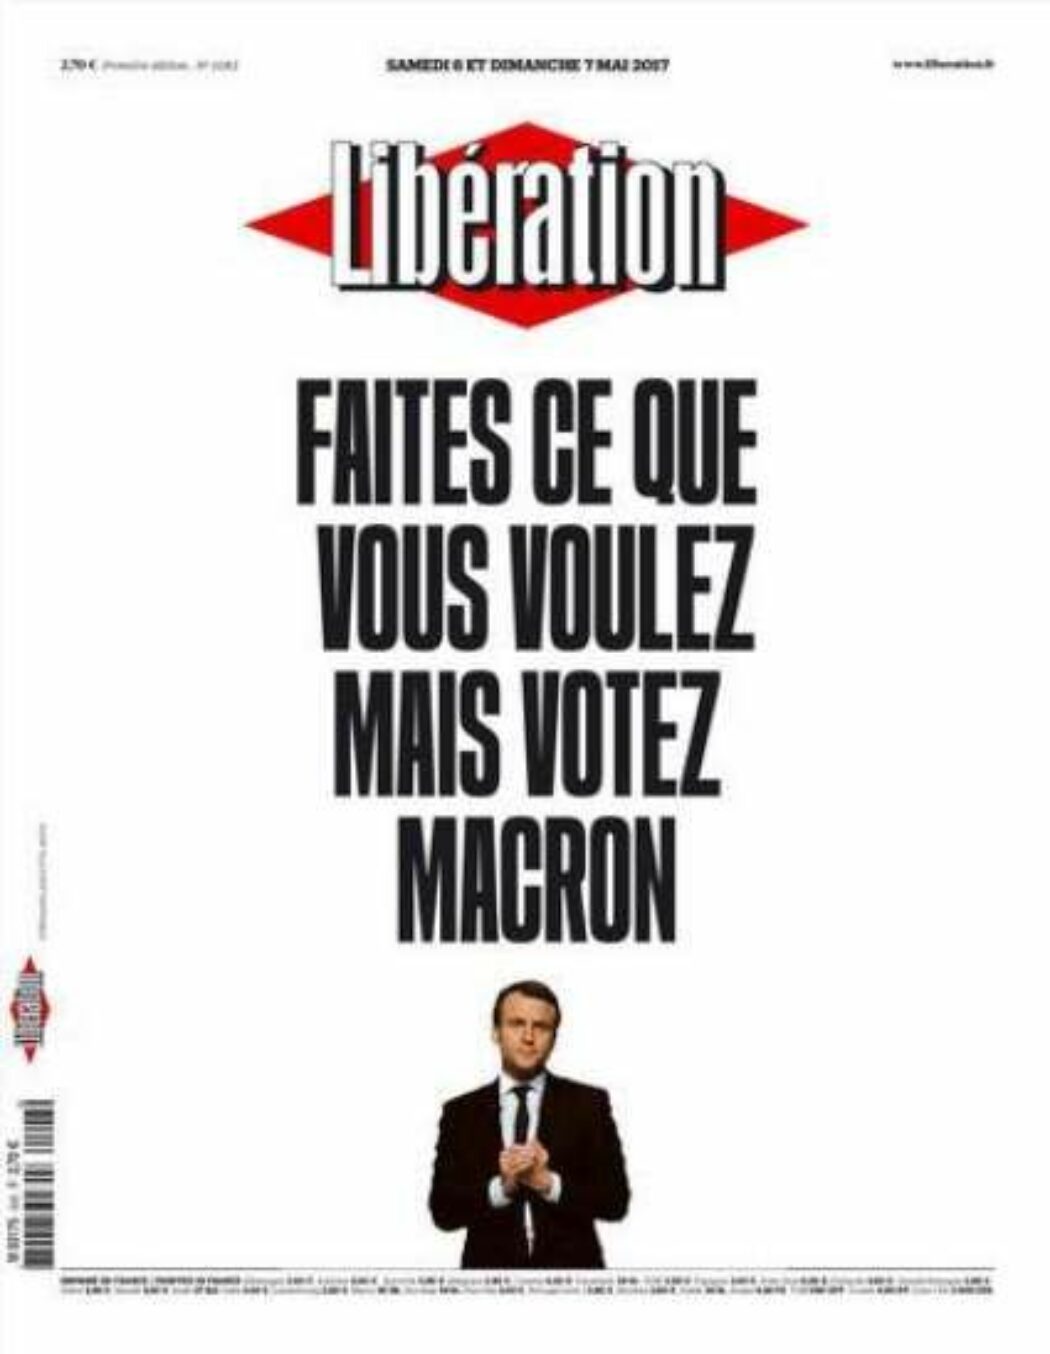 Laurent Joffrin veut oeuvrer “à la recomposition de la gauche”. On lui souhaite le même succès qu’à Libération